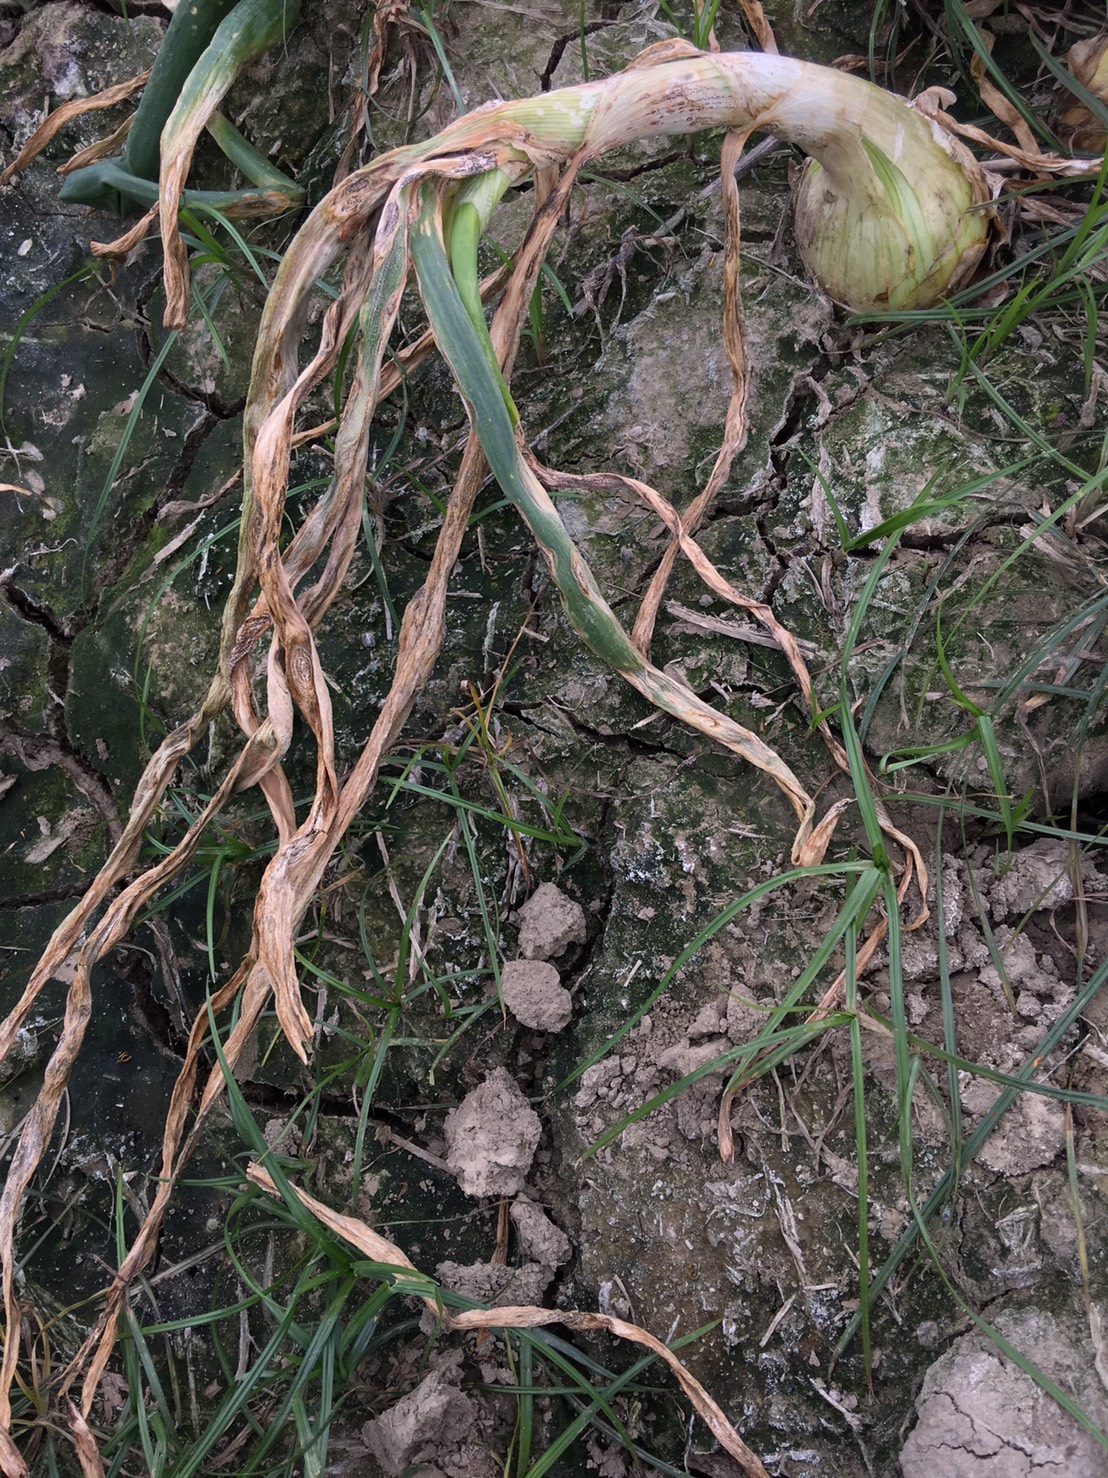 葉片受害嚴重時全株乾枯，蔥球後續成長將明顯受到限制。